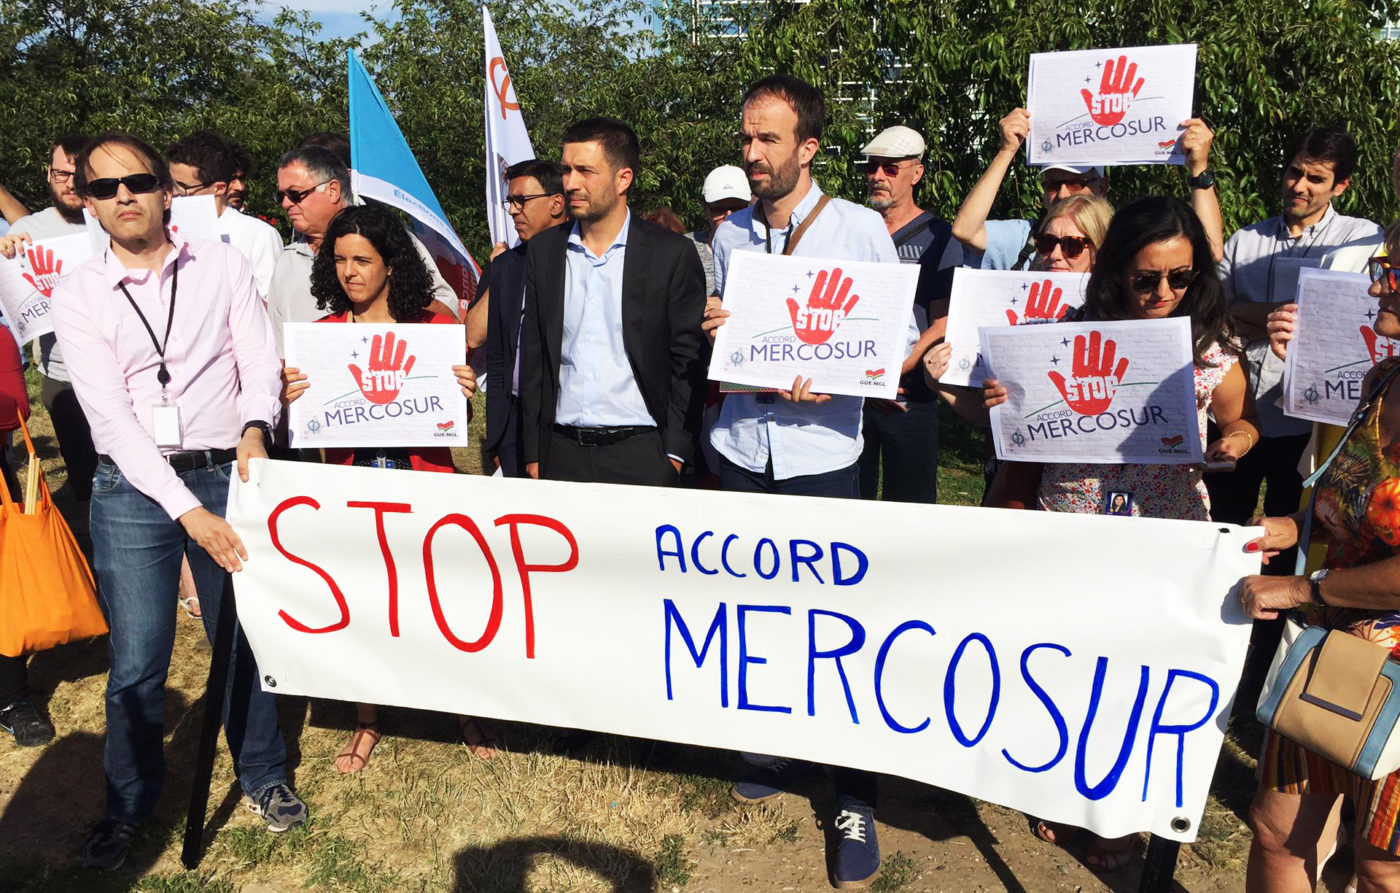 EU-Mercosur Free Trade Agreement - An Explainer | left